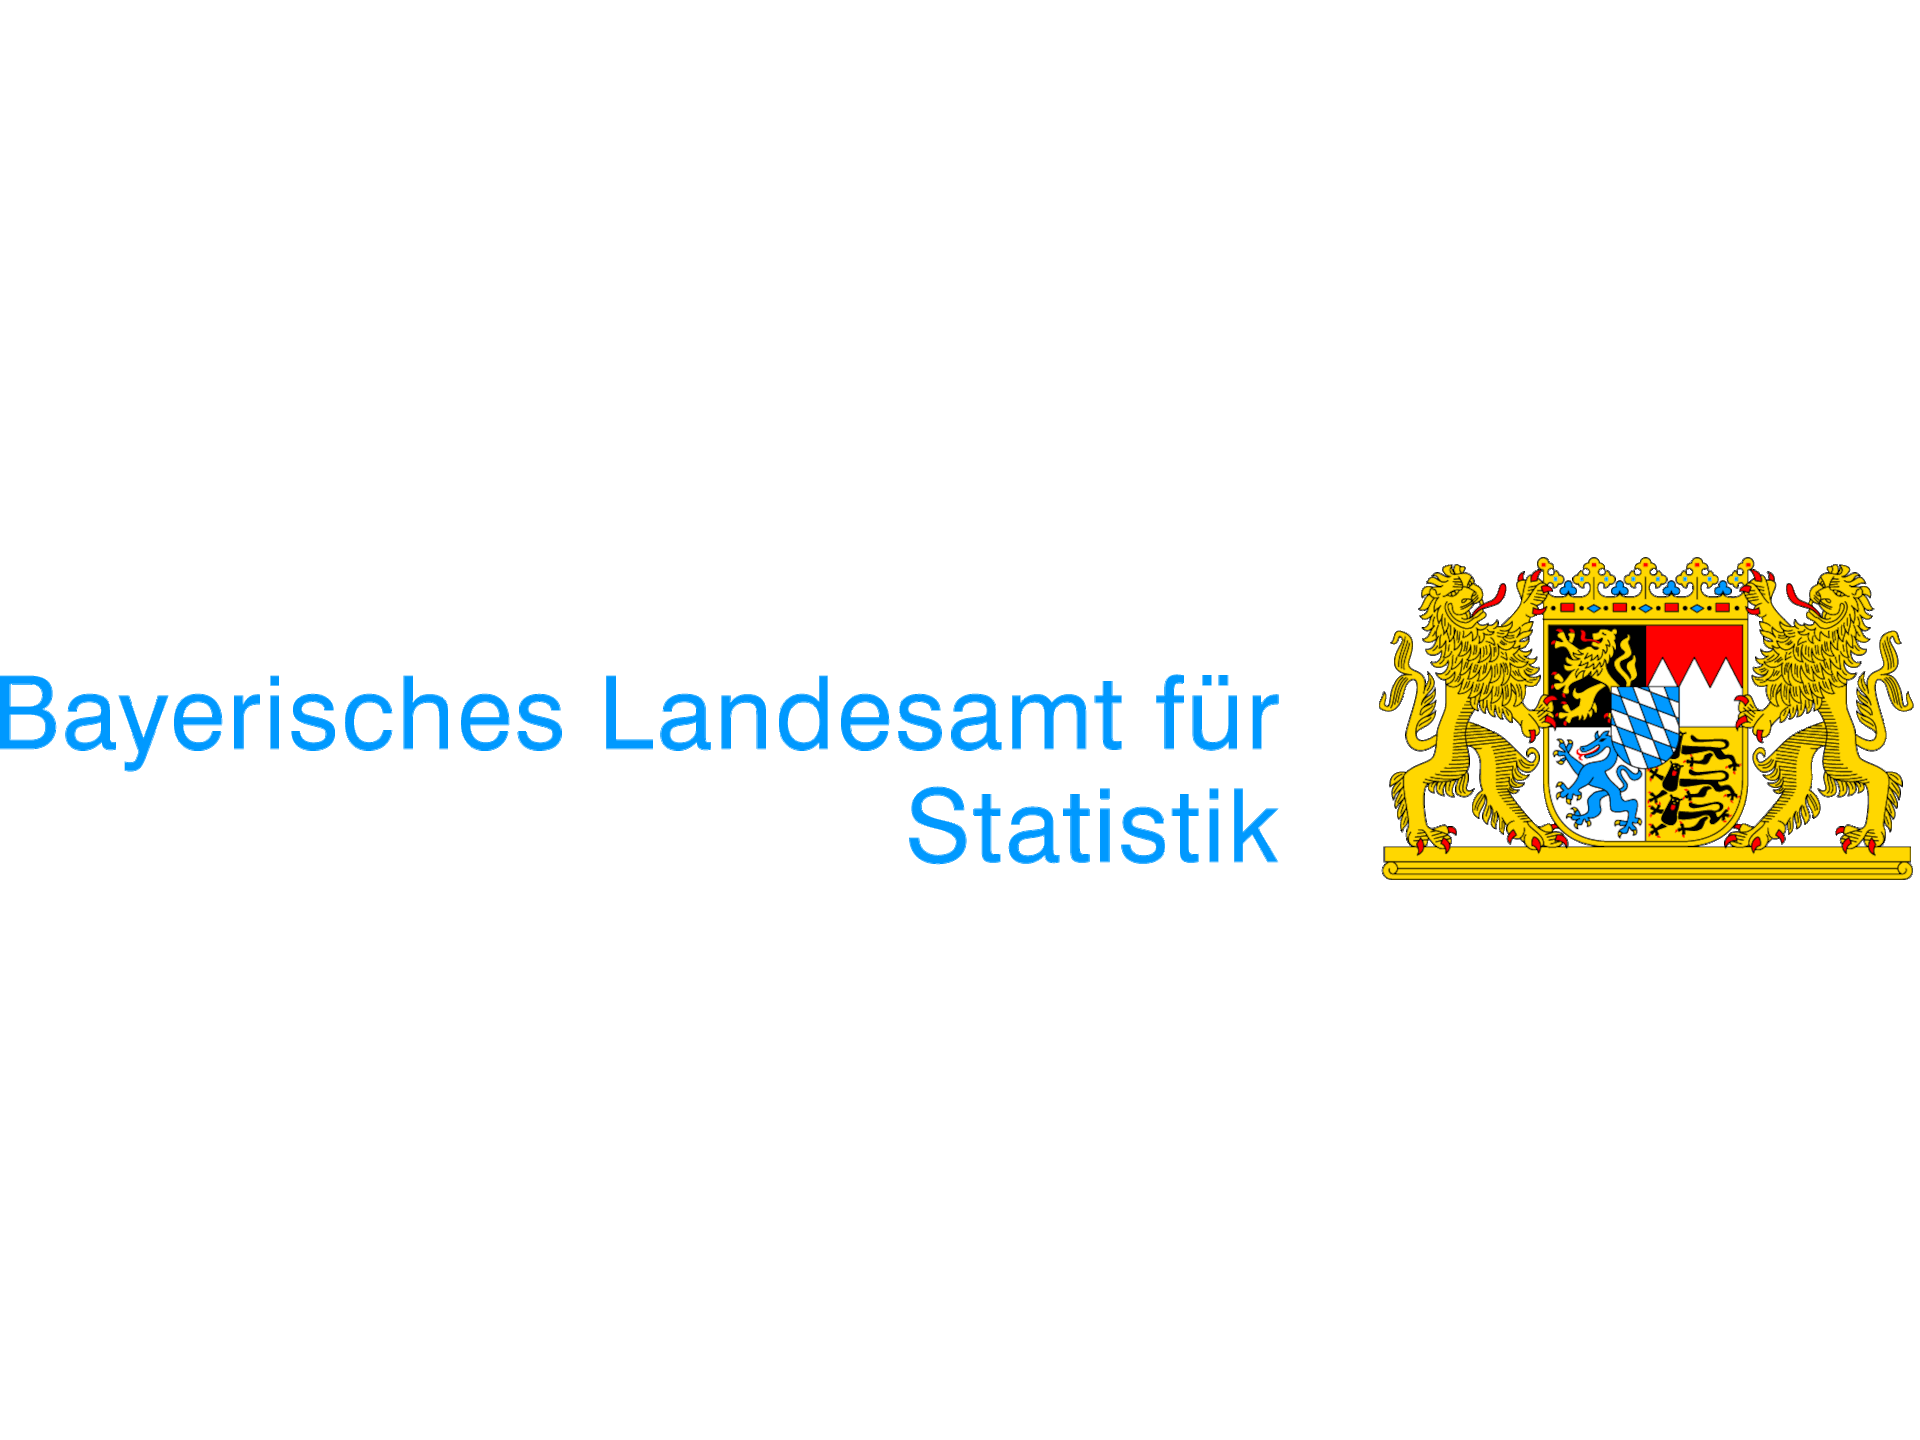 Logo_Bayersiches_Landesamt_für_Statistik1920x1440